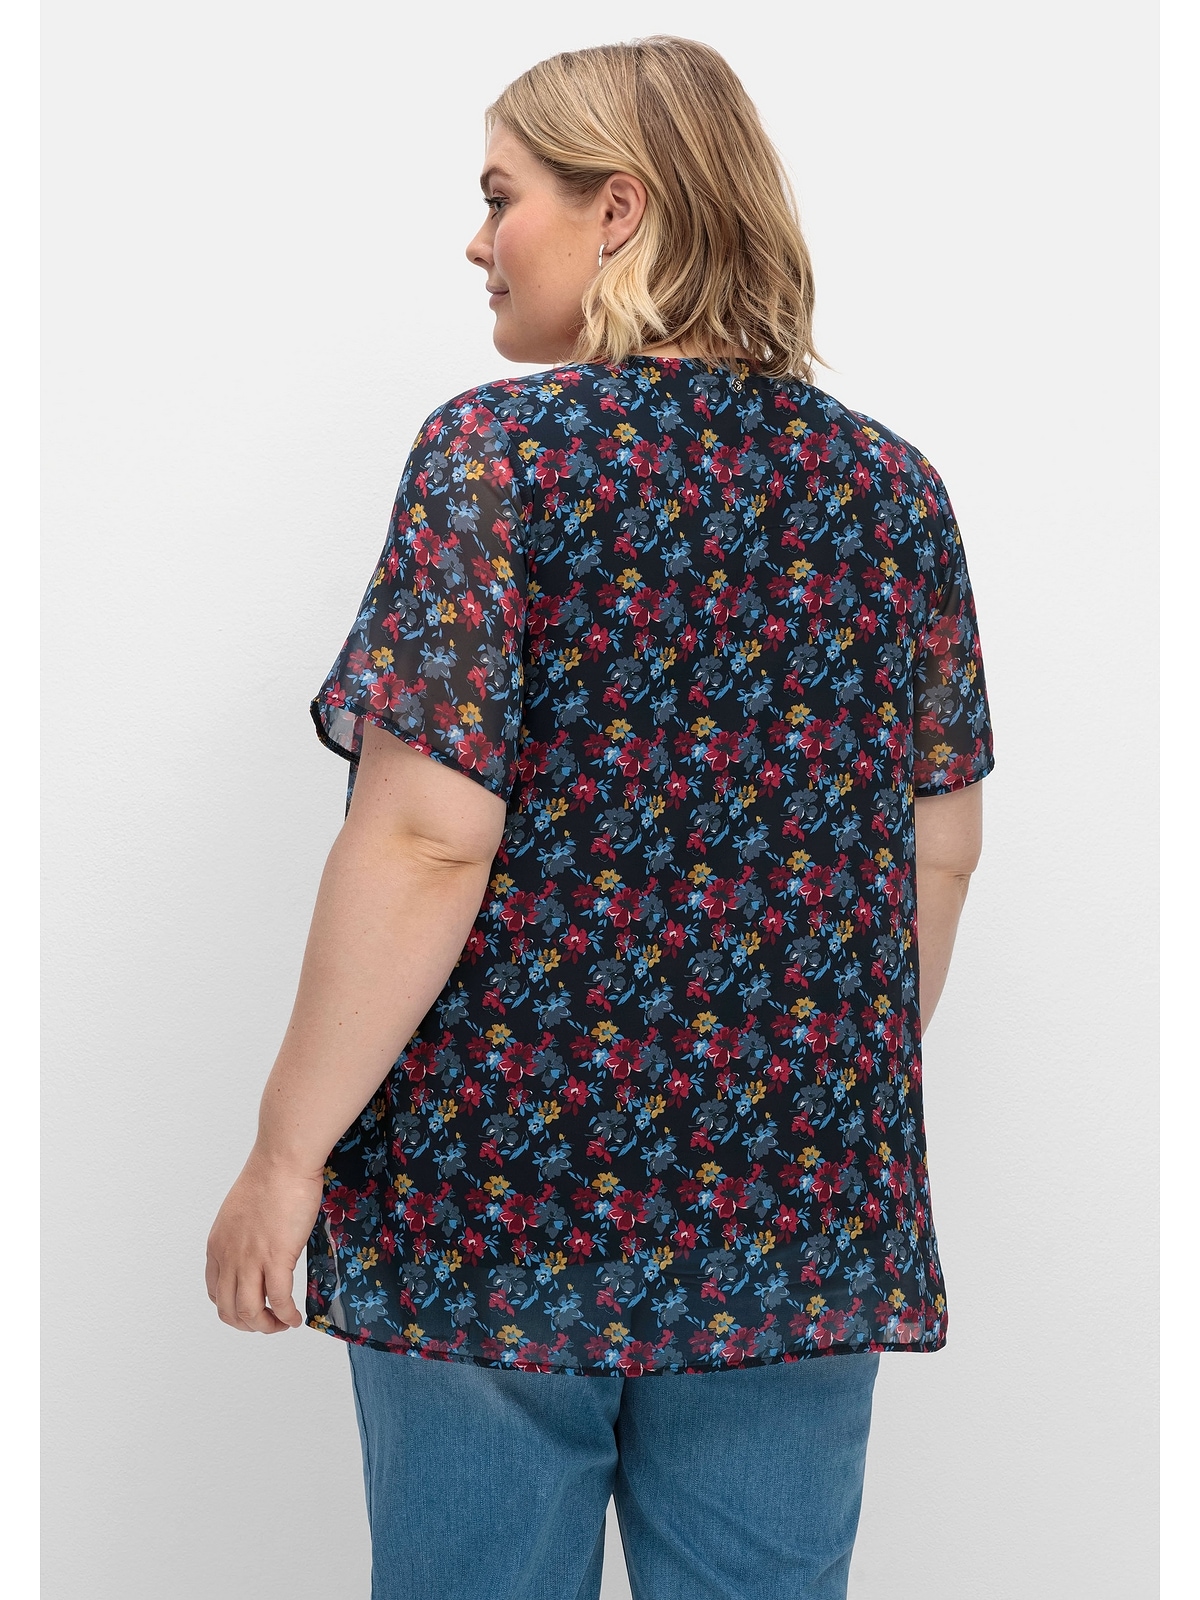 Sheego bestellen Chiffonqualität, »Große Größen«, in Untershirt T-Shirt leichter blickdichtes